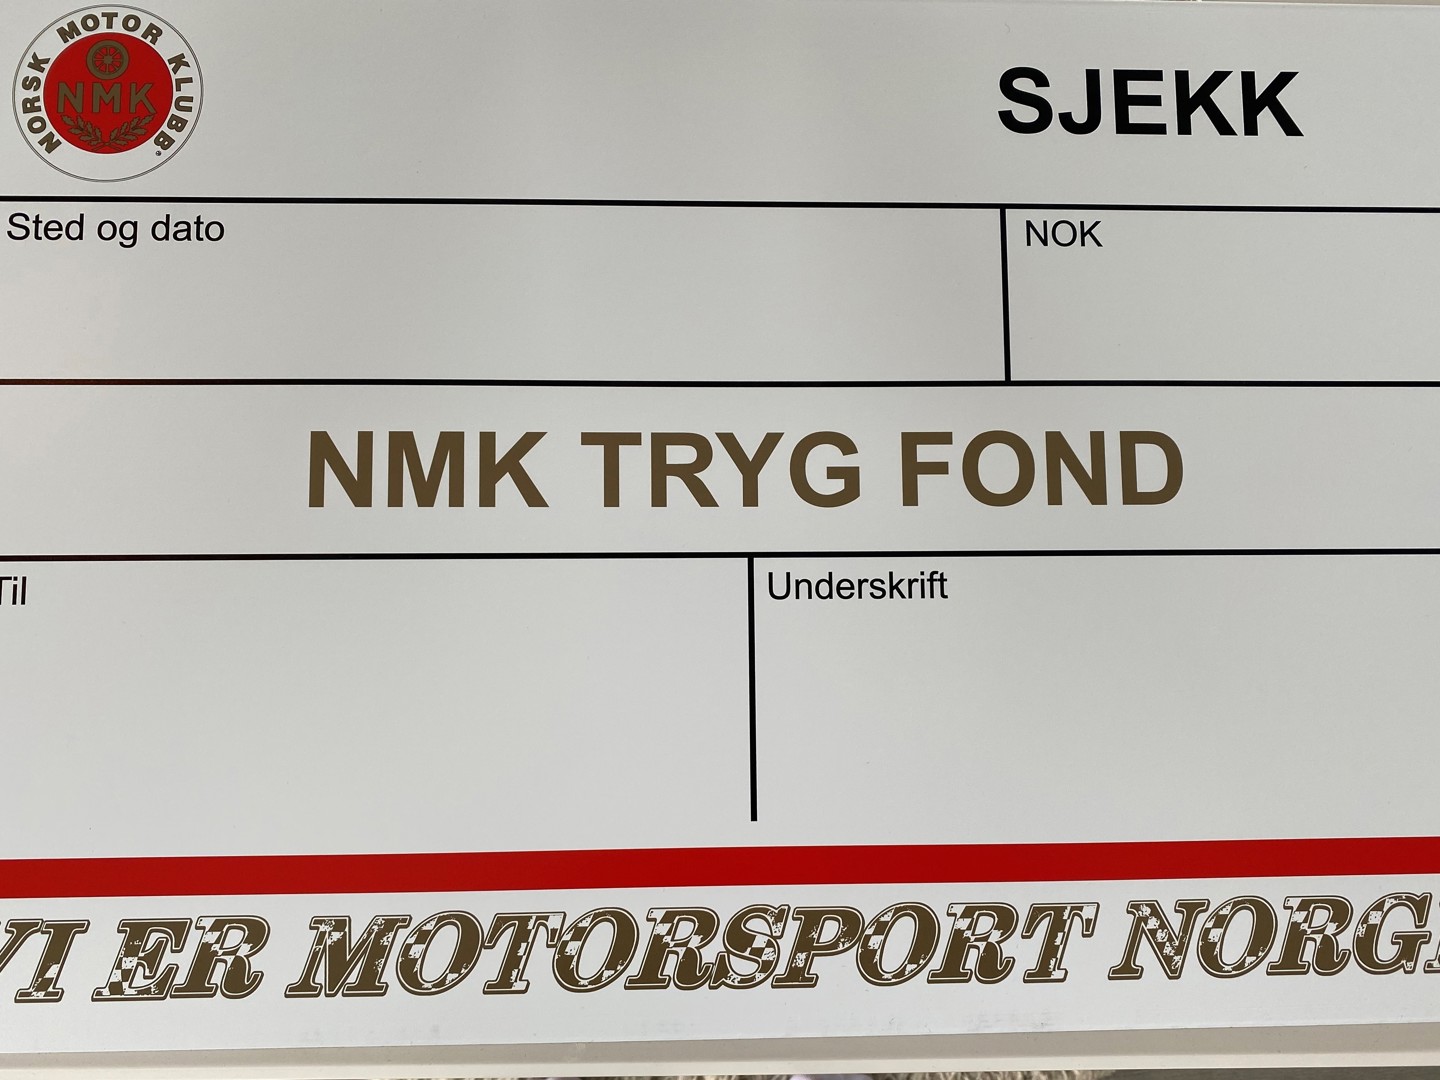 TILDELING AV NMK TRYG FOND 2021 STARTER IDAG